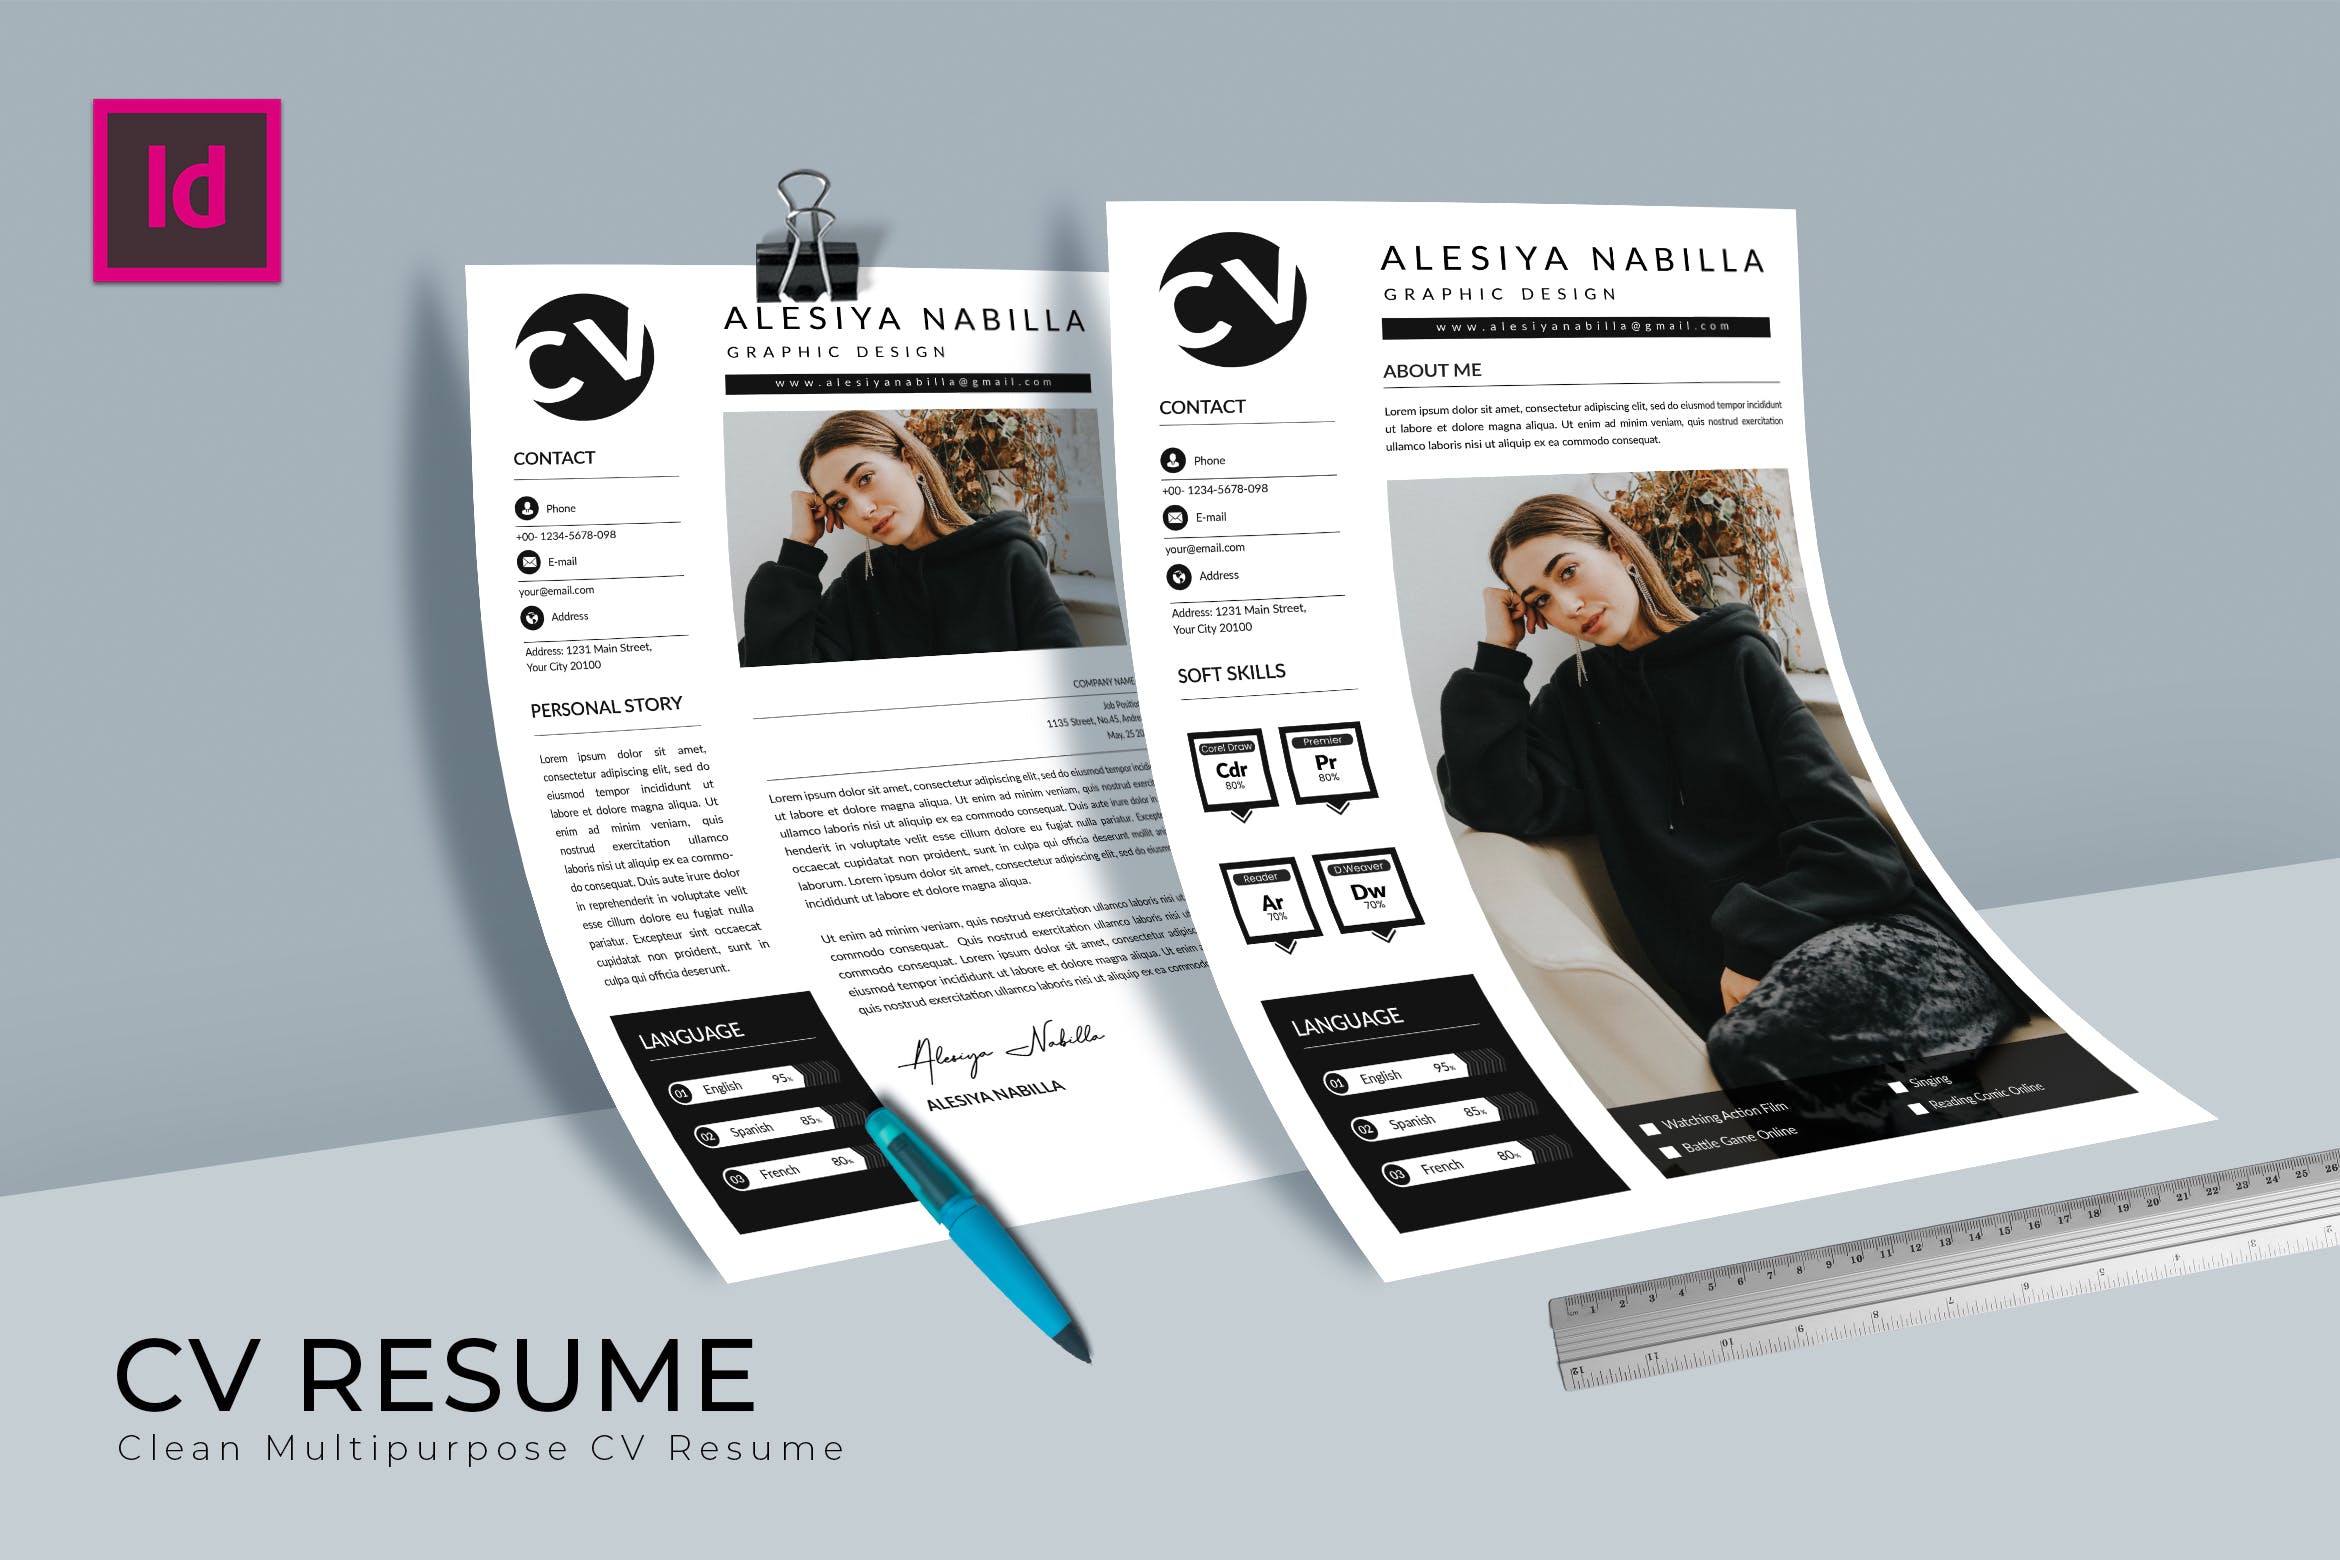 图形设计师介绍信&蚂蚁素材精选简历模板 Beautiful CV Resume Design插图